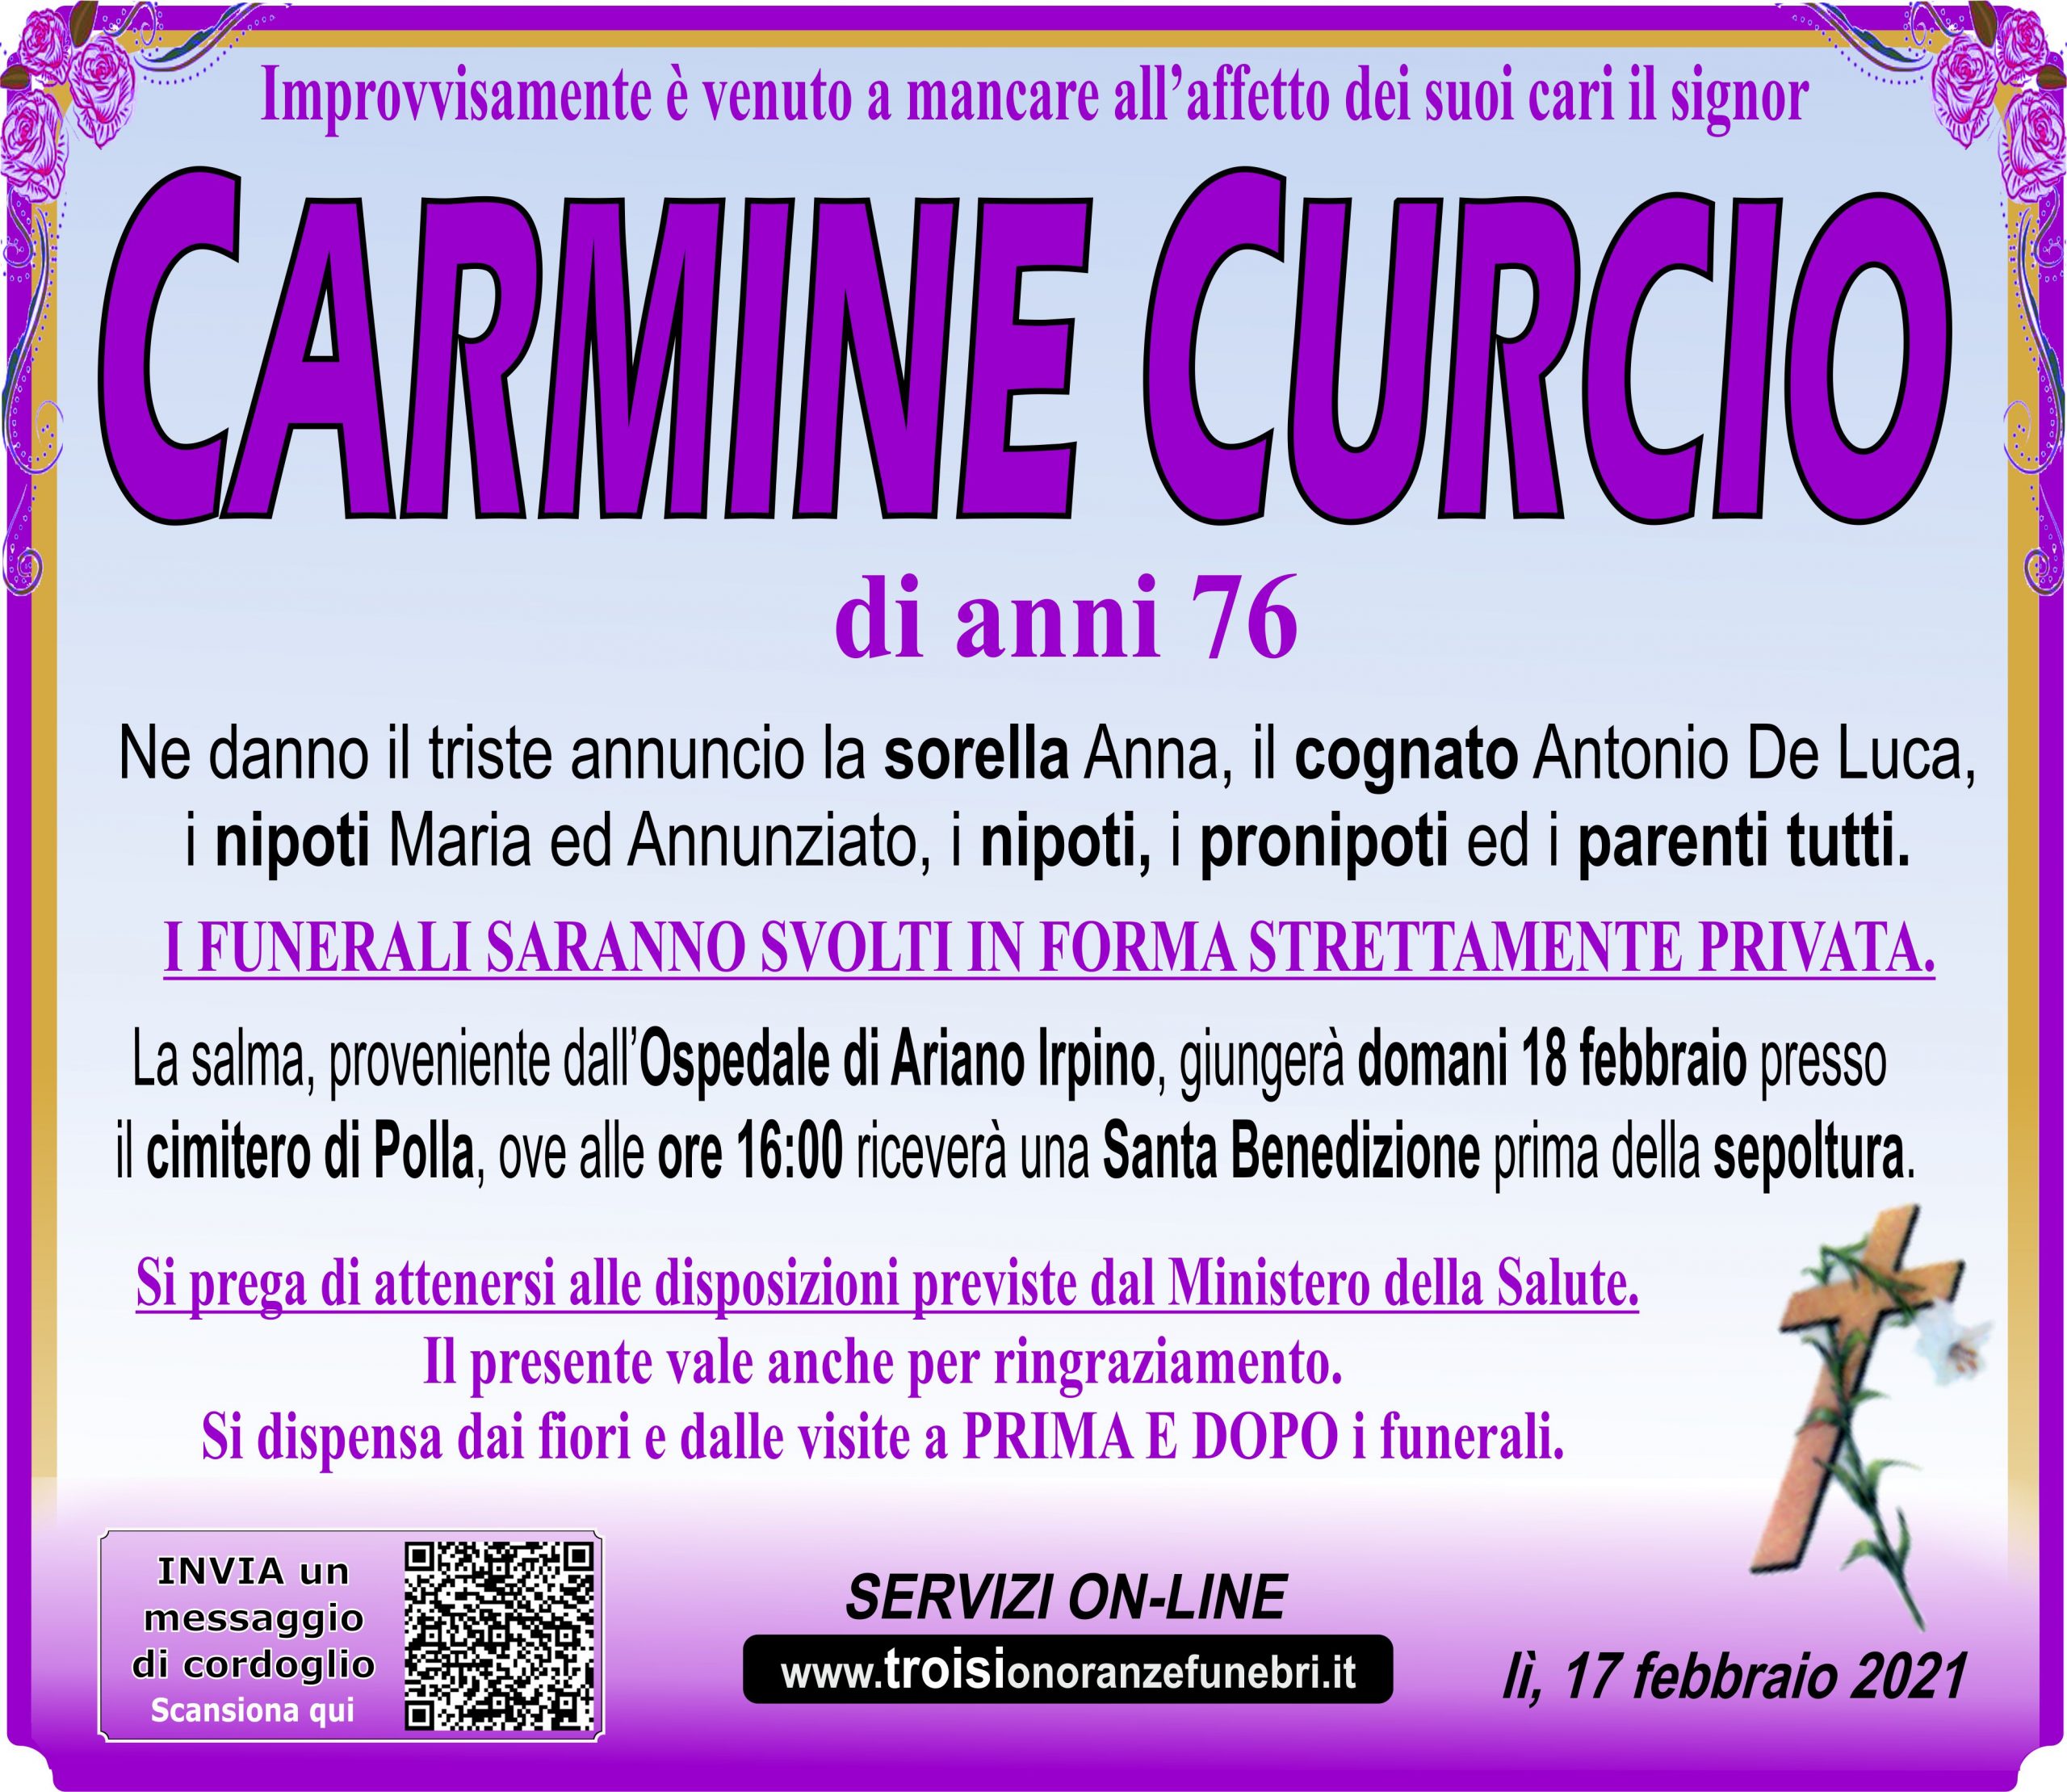 CARMINE CURCIO